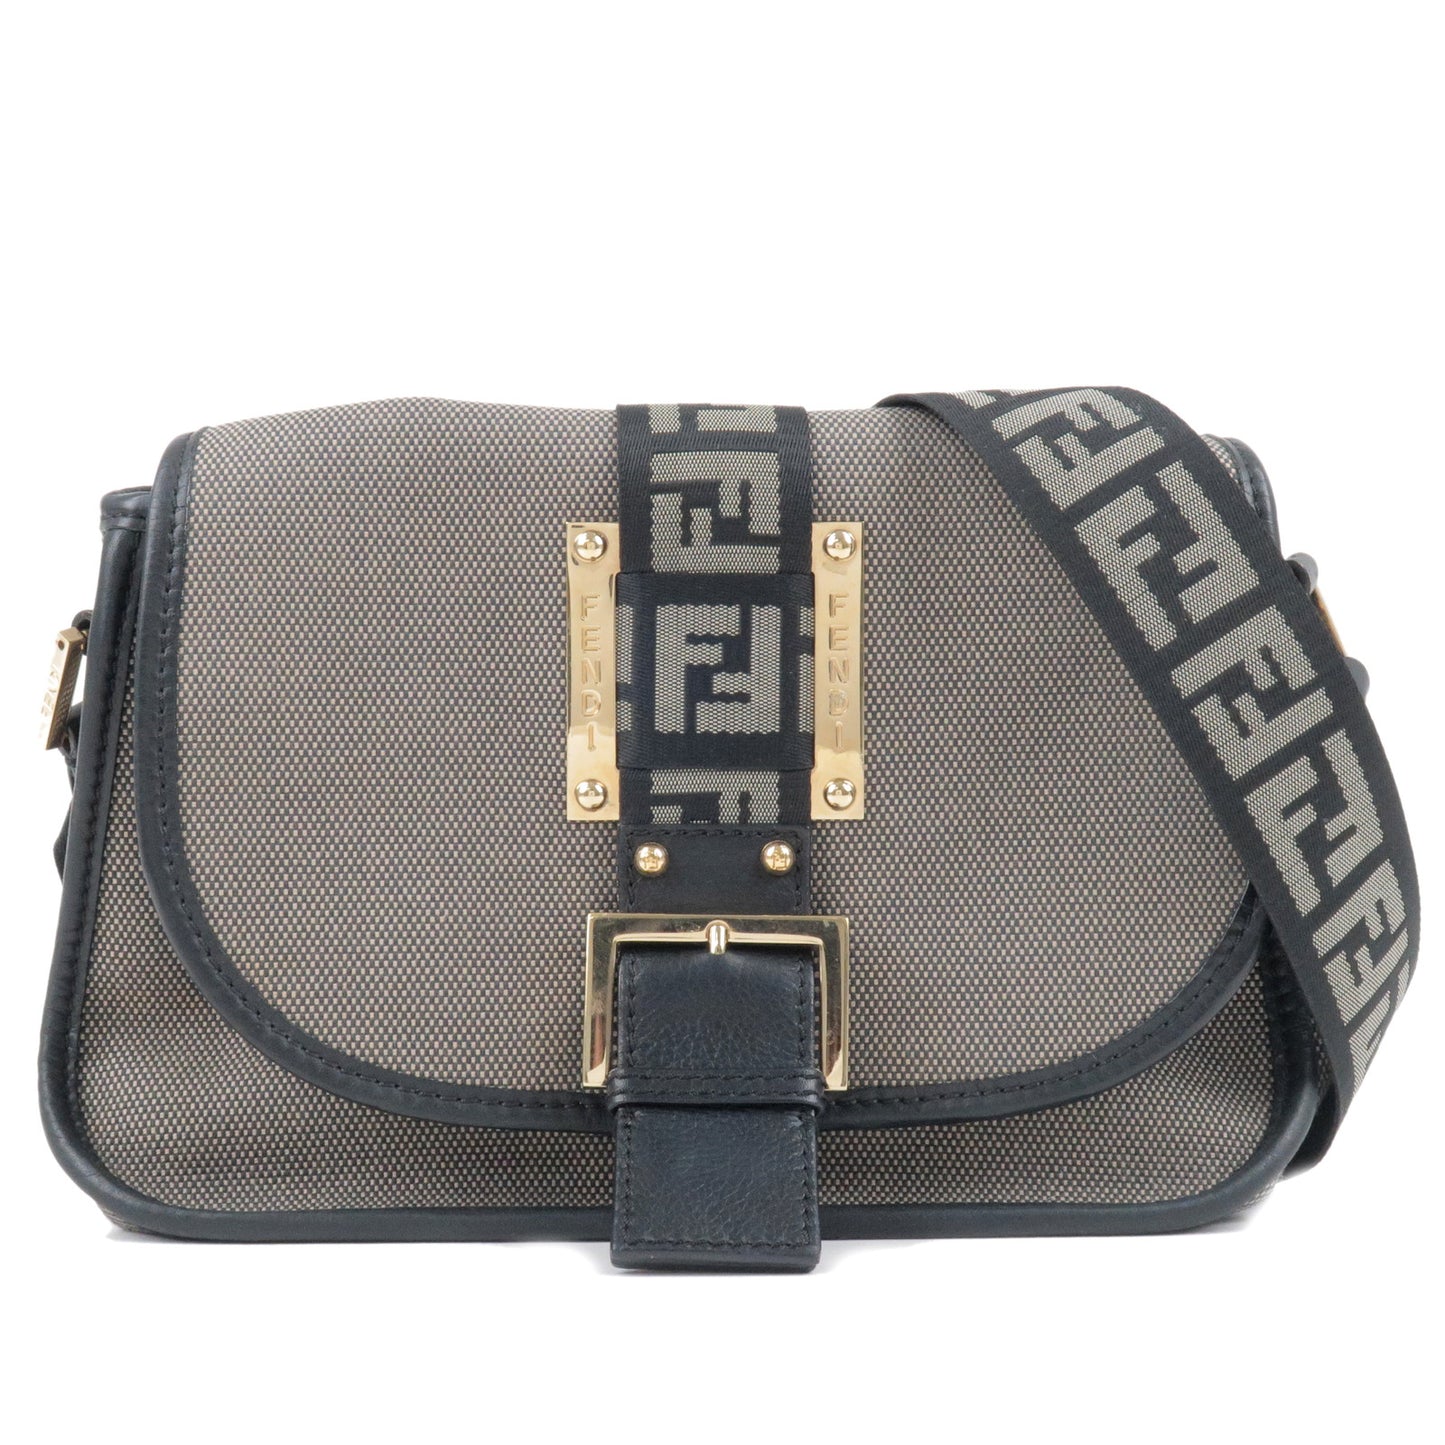 FENDI-Zucca-Canvas-Leather-Shoulder-Bag-Gray-Black-8BT097